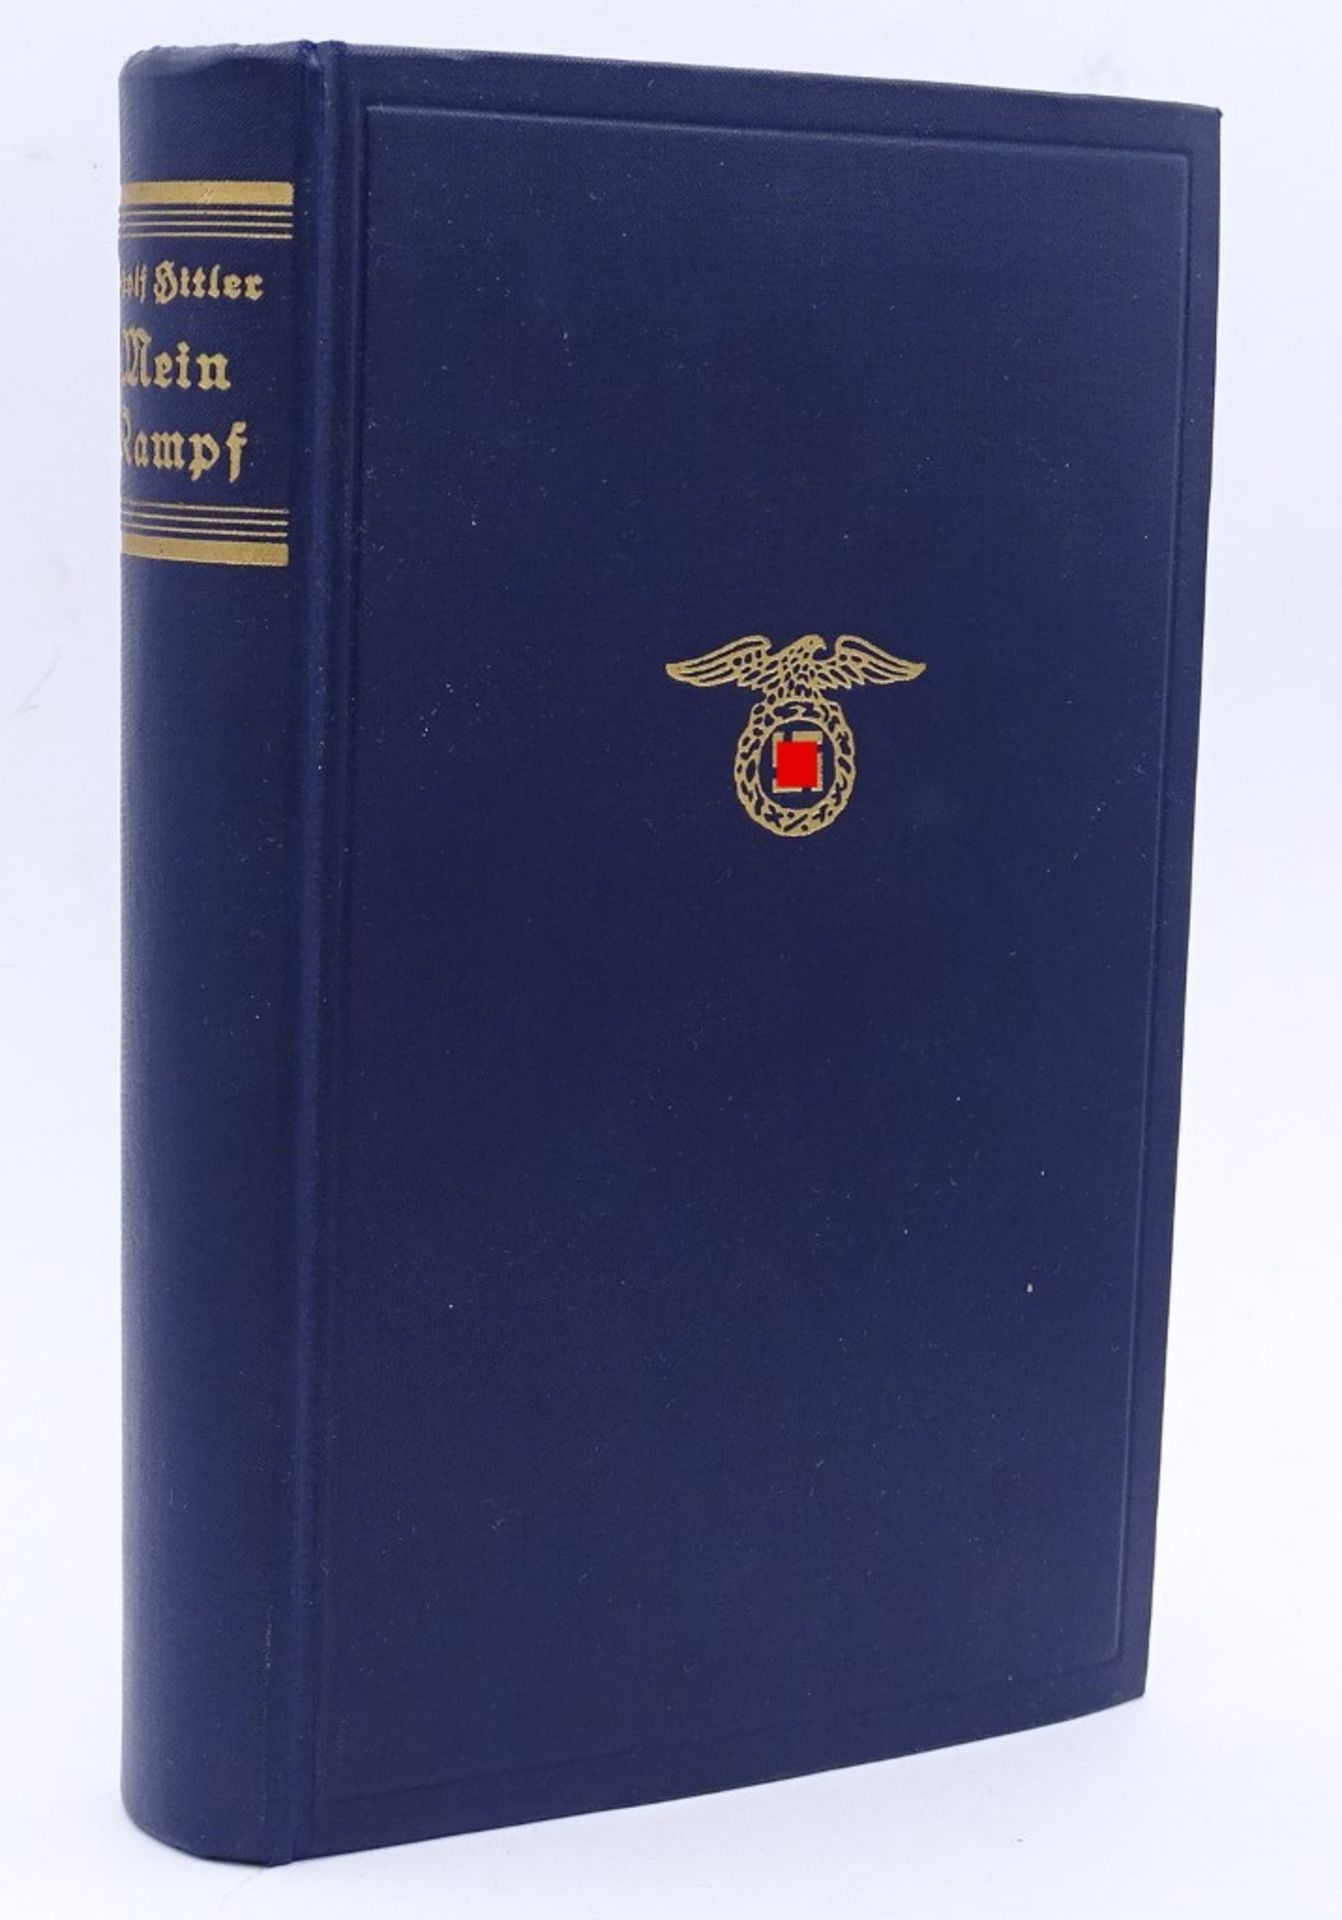 Adolf Hitler "Mein Kampf",blaue Ausgabe, 1941 ,sehr gut erhalten